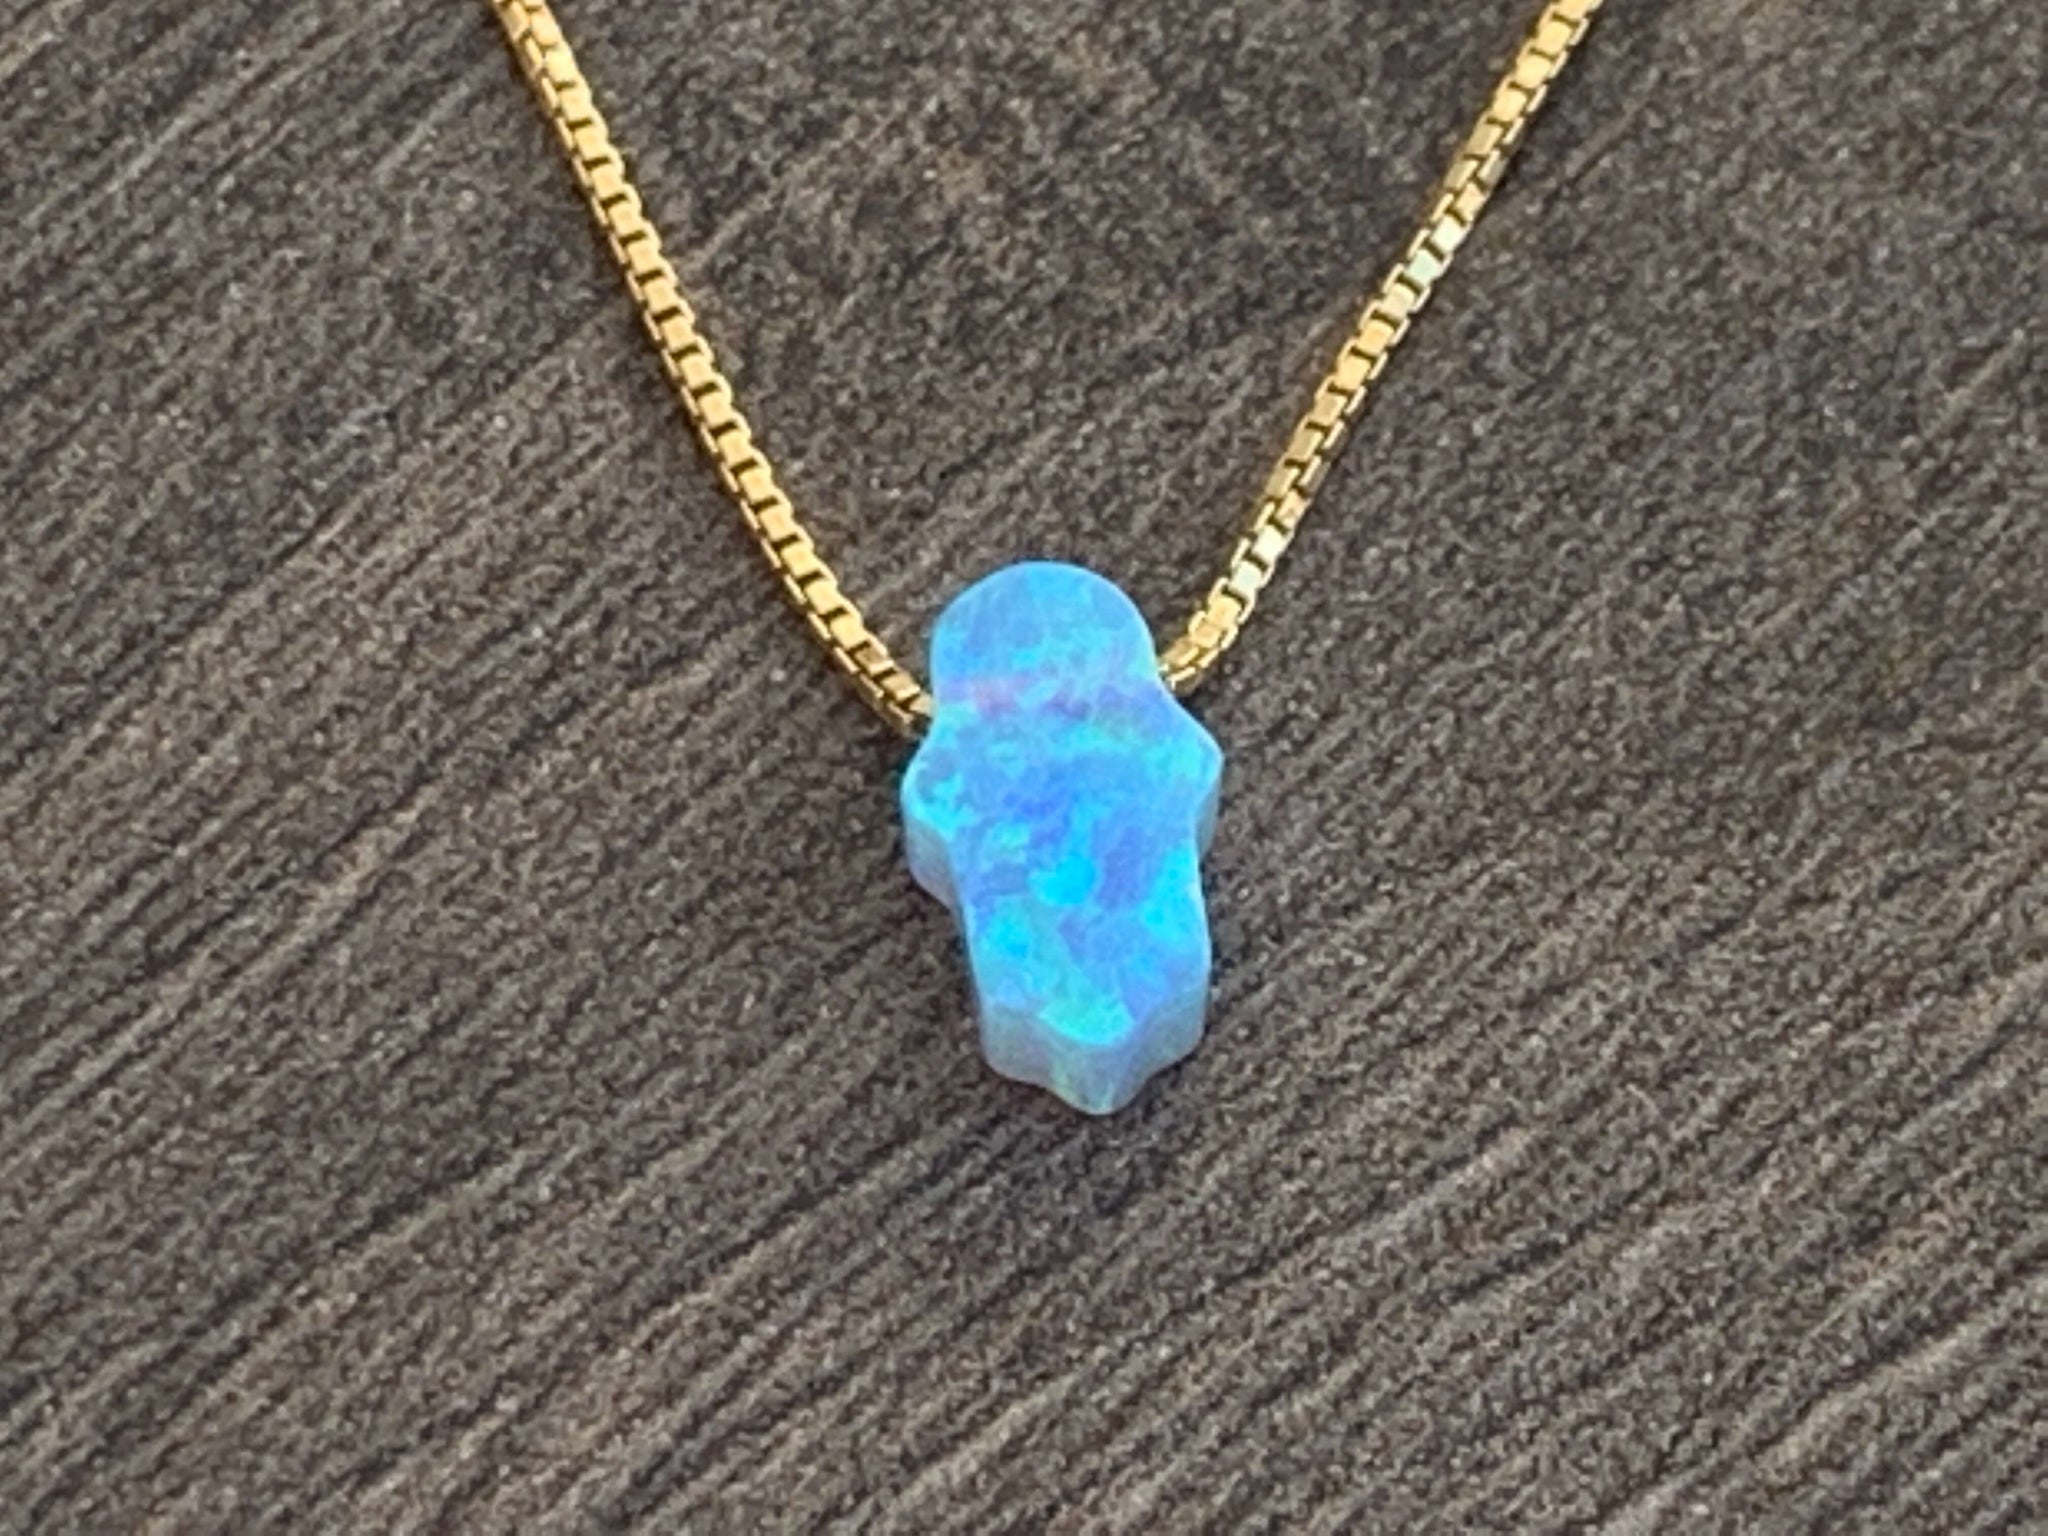 14kt Gold Filled Light Blue Hamsa Necklace